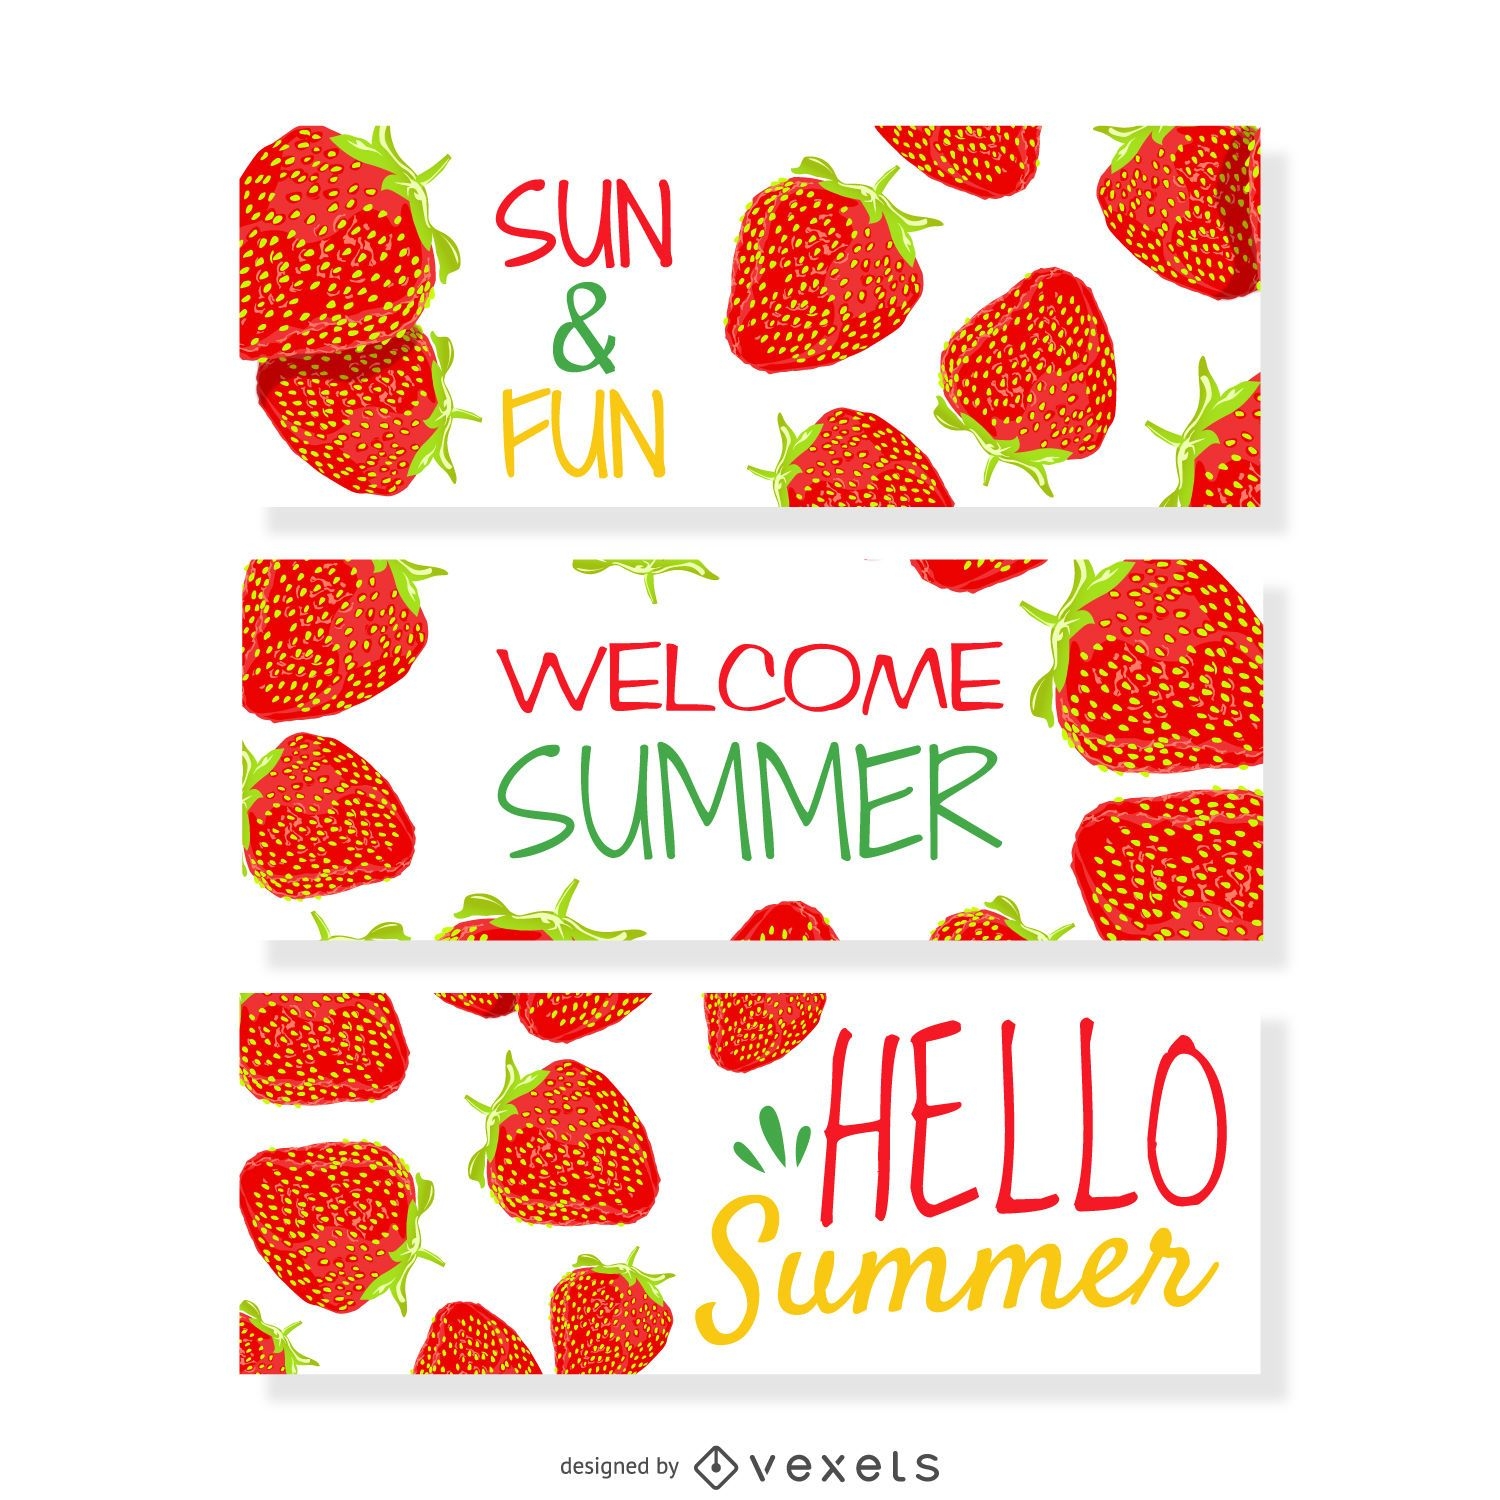 Erdbeer-Sommer-Banner-Set